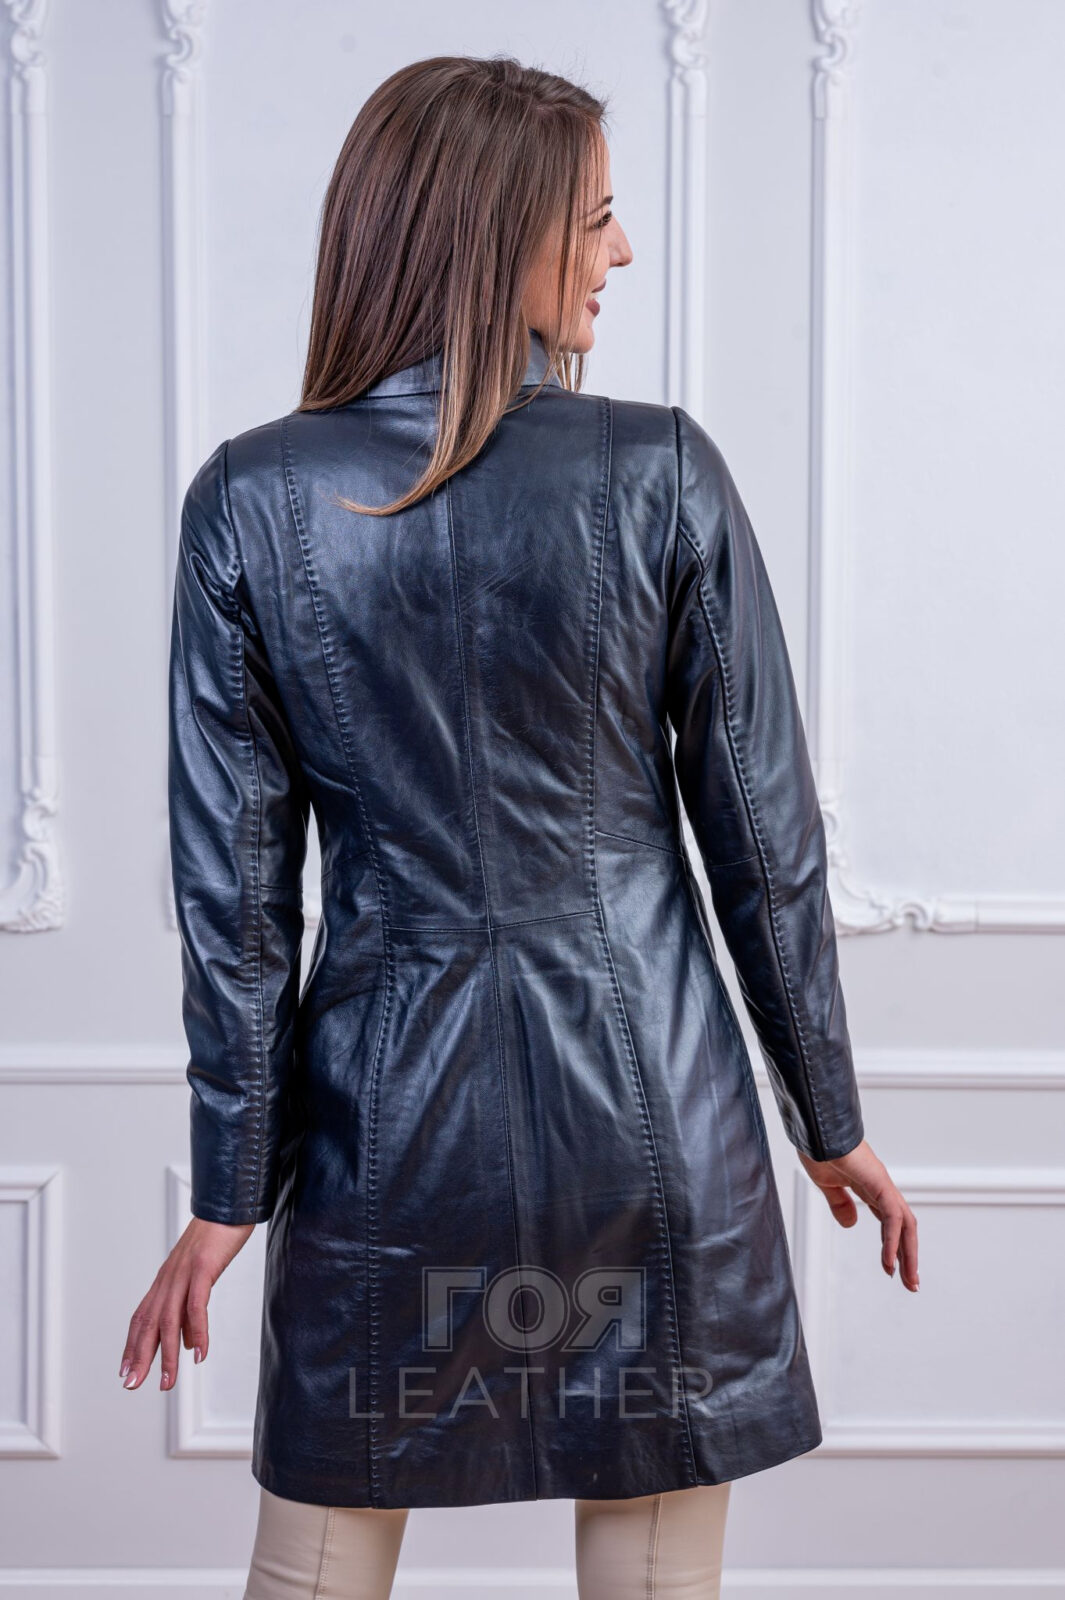 Дамско вталено кожено манто от ГОЯ Leather. Нов модел втален силует изработен от 100% висококачествена агнешка кожа.